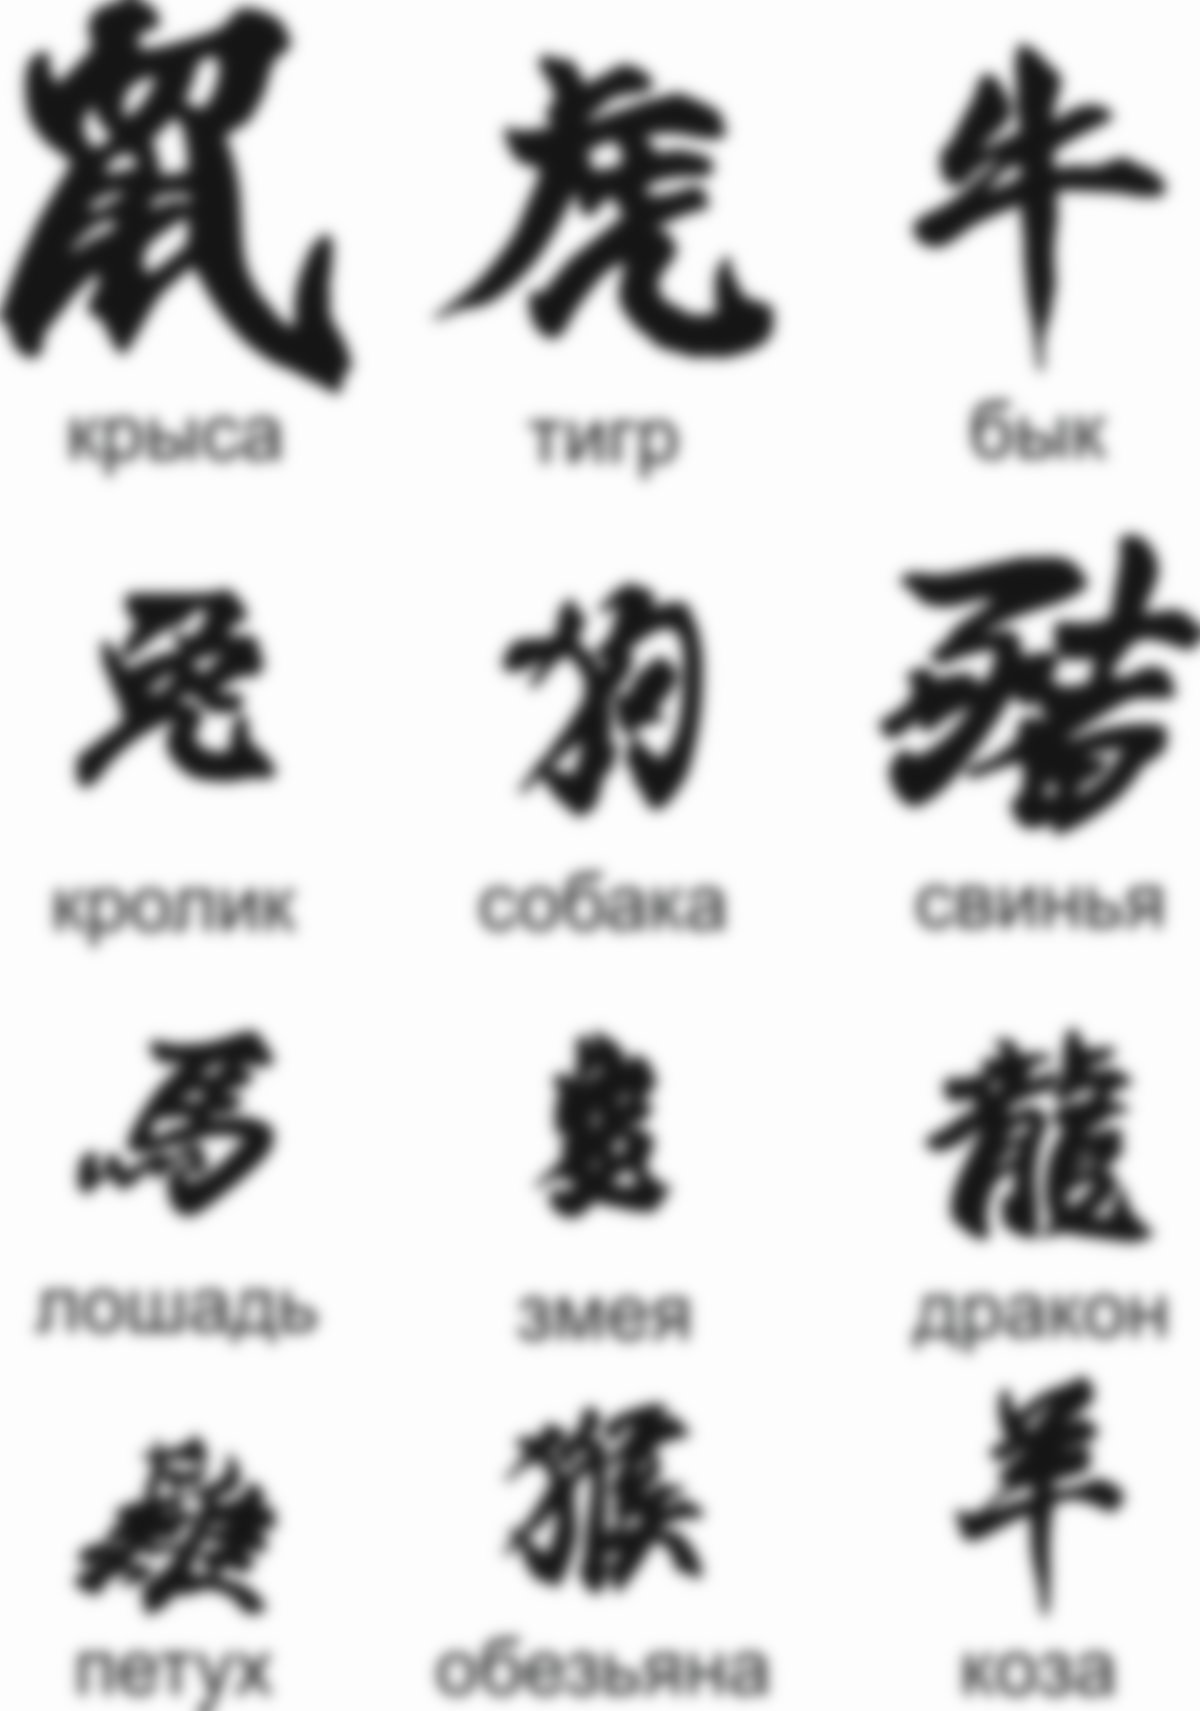 иероглифы тату и их значение на русском